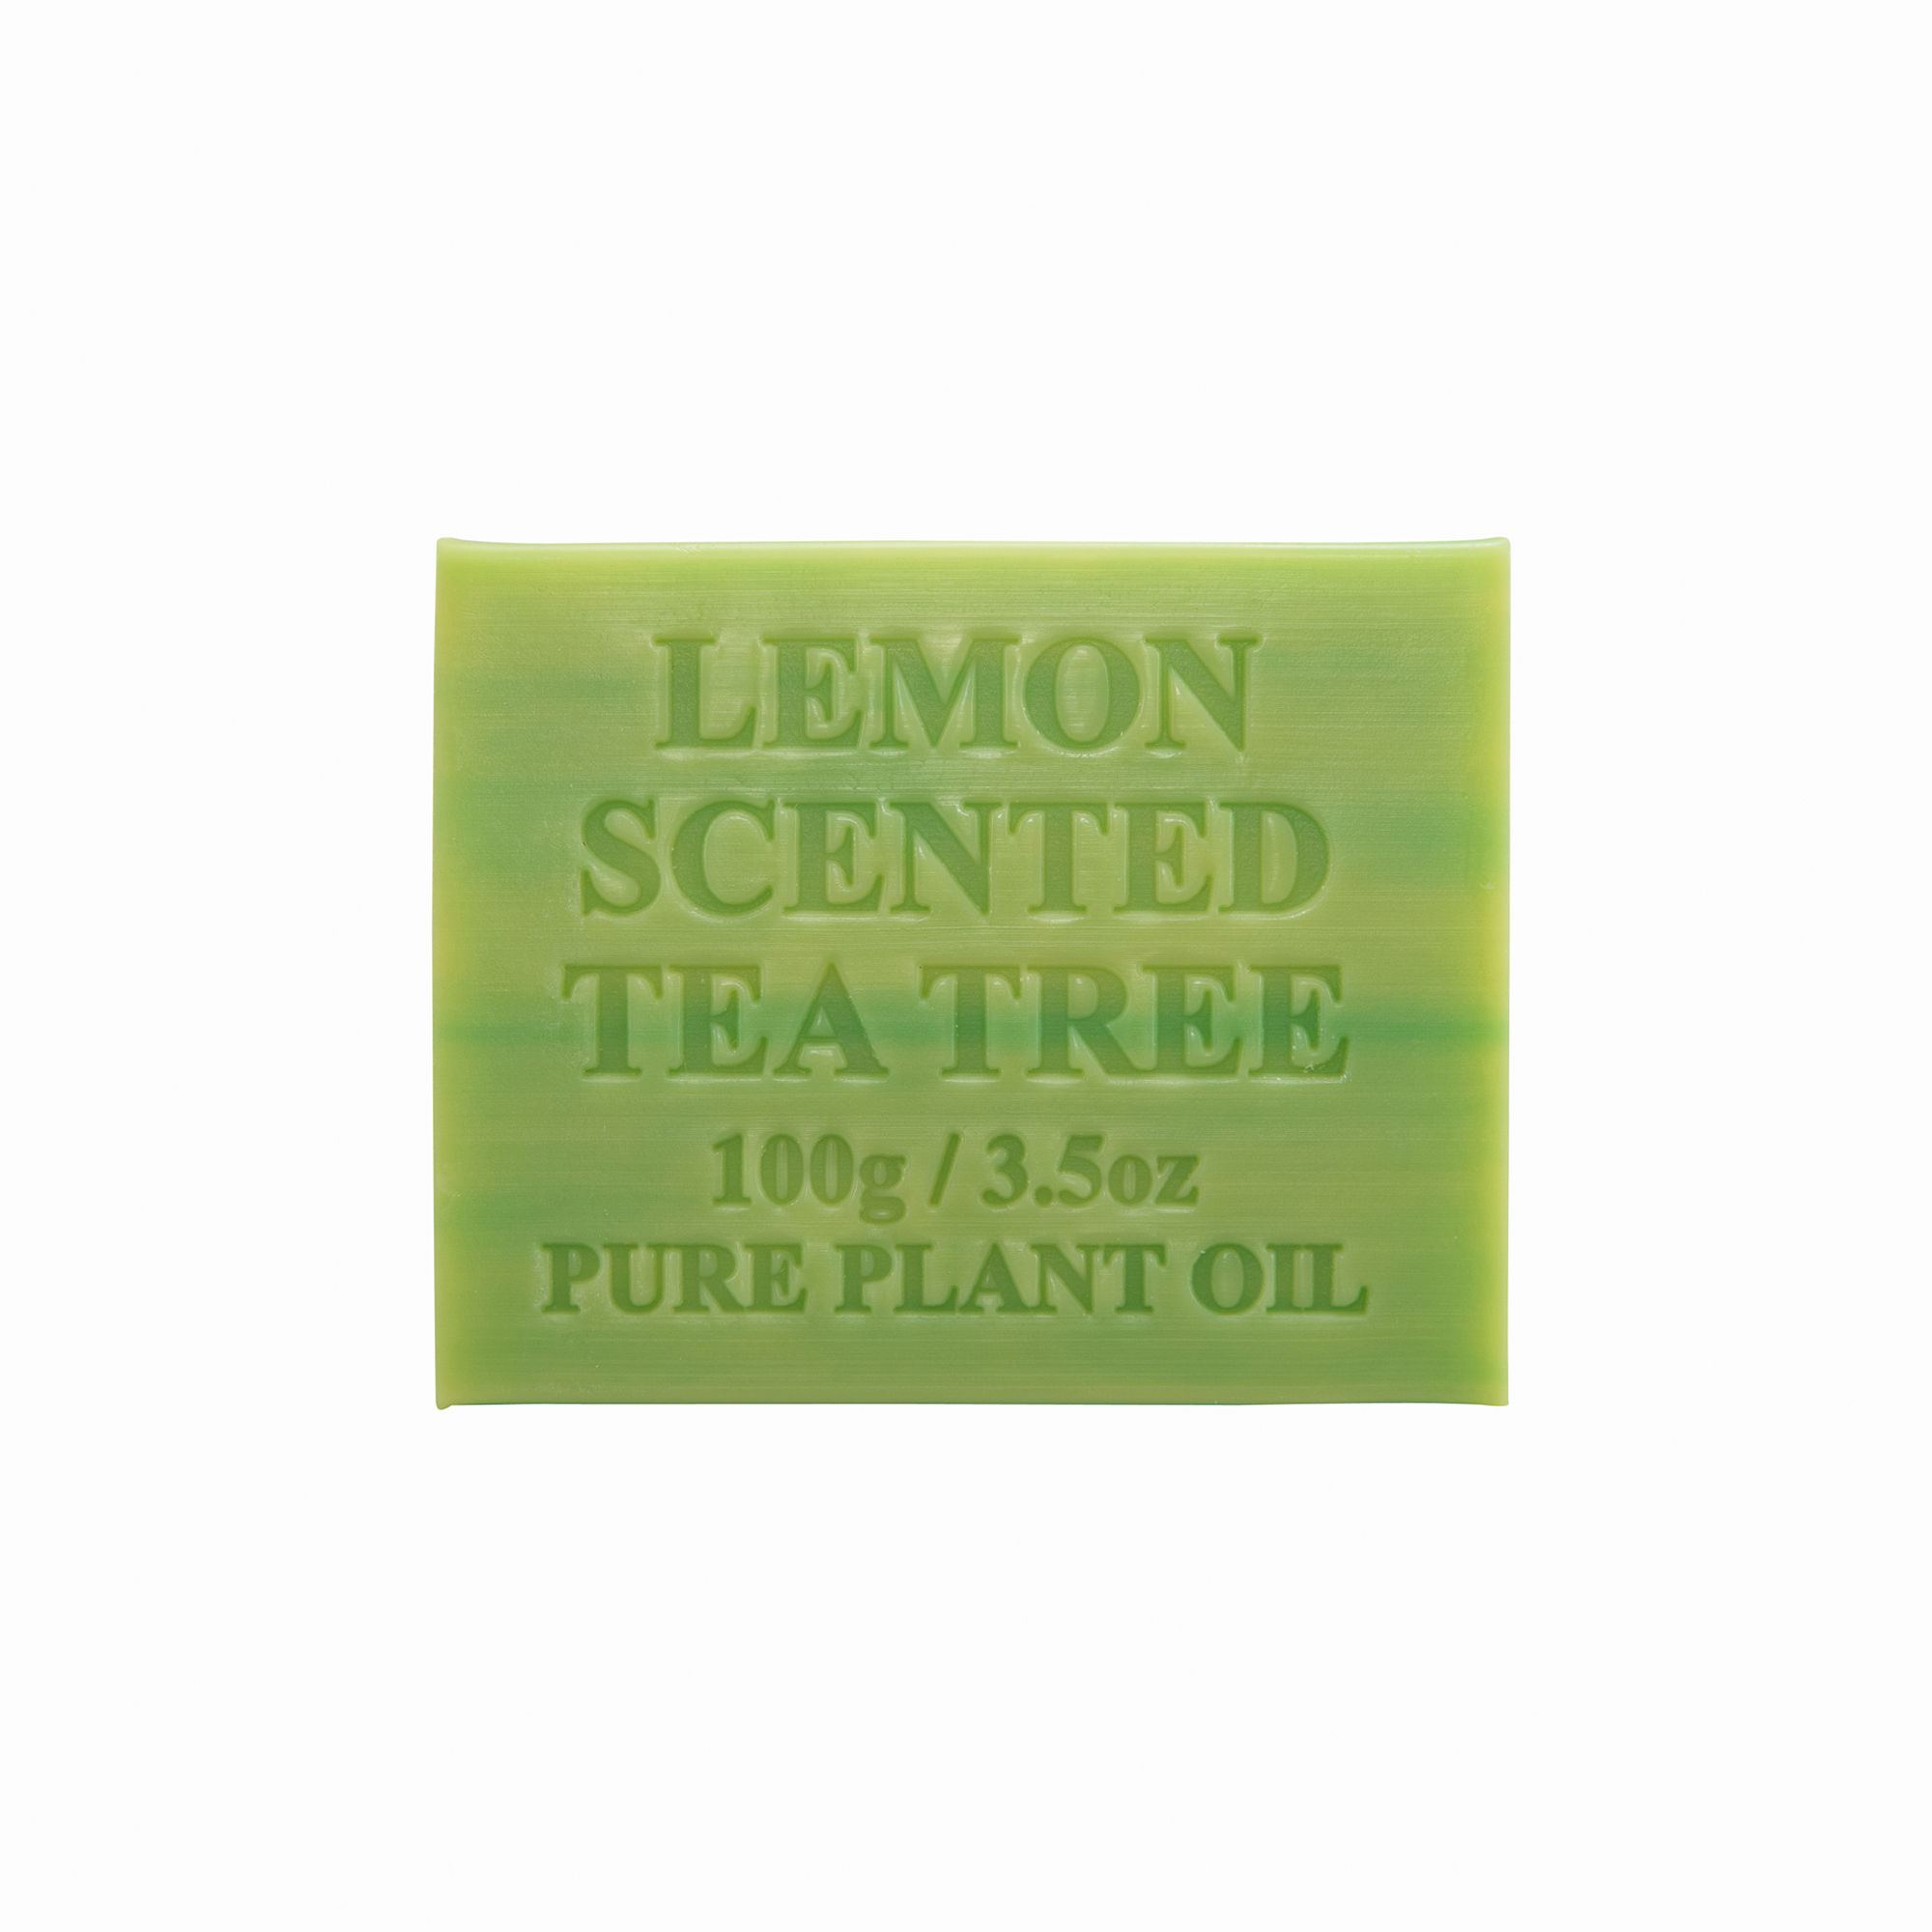 Lemon Scented Tea Tree 100g